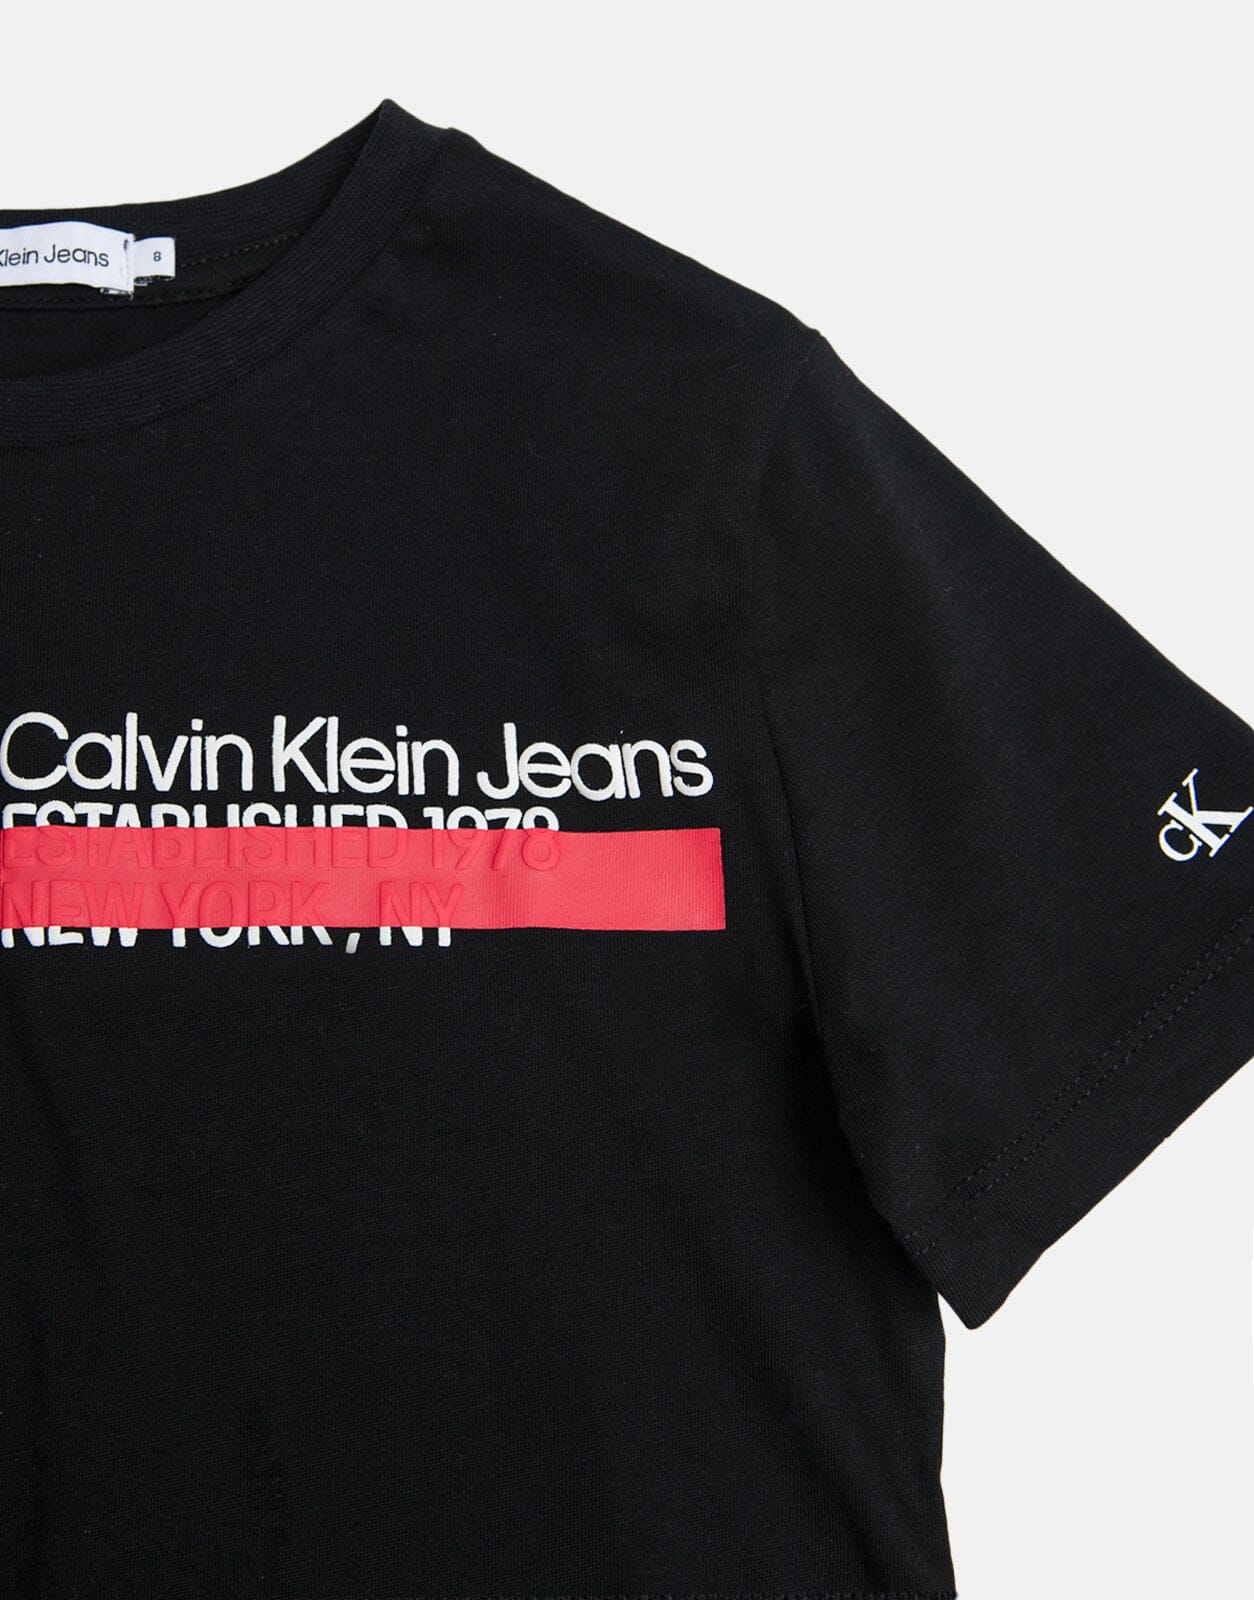 Calvin Klein T Shirt 